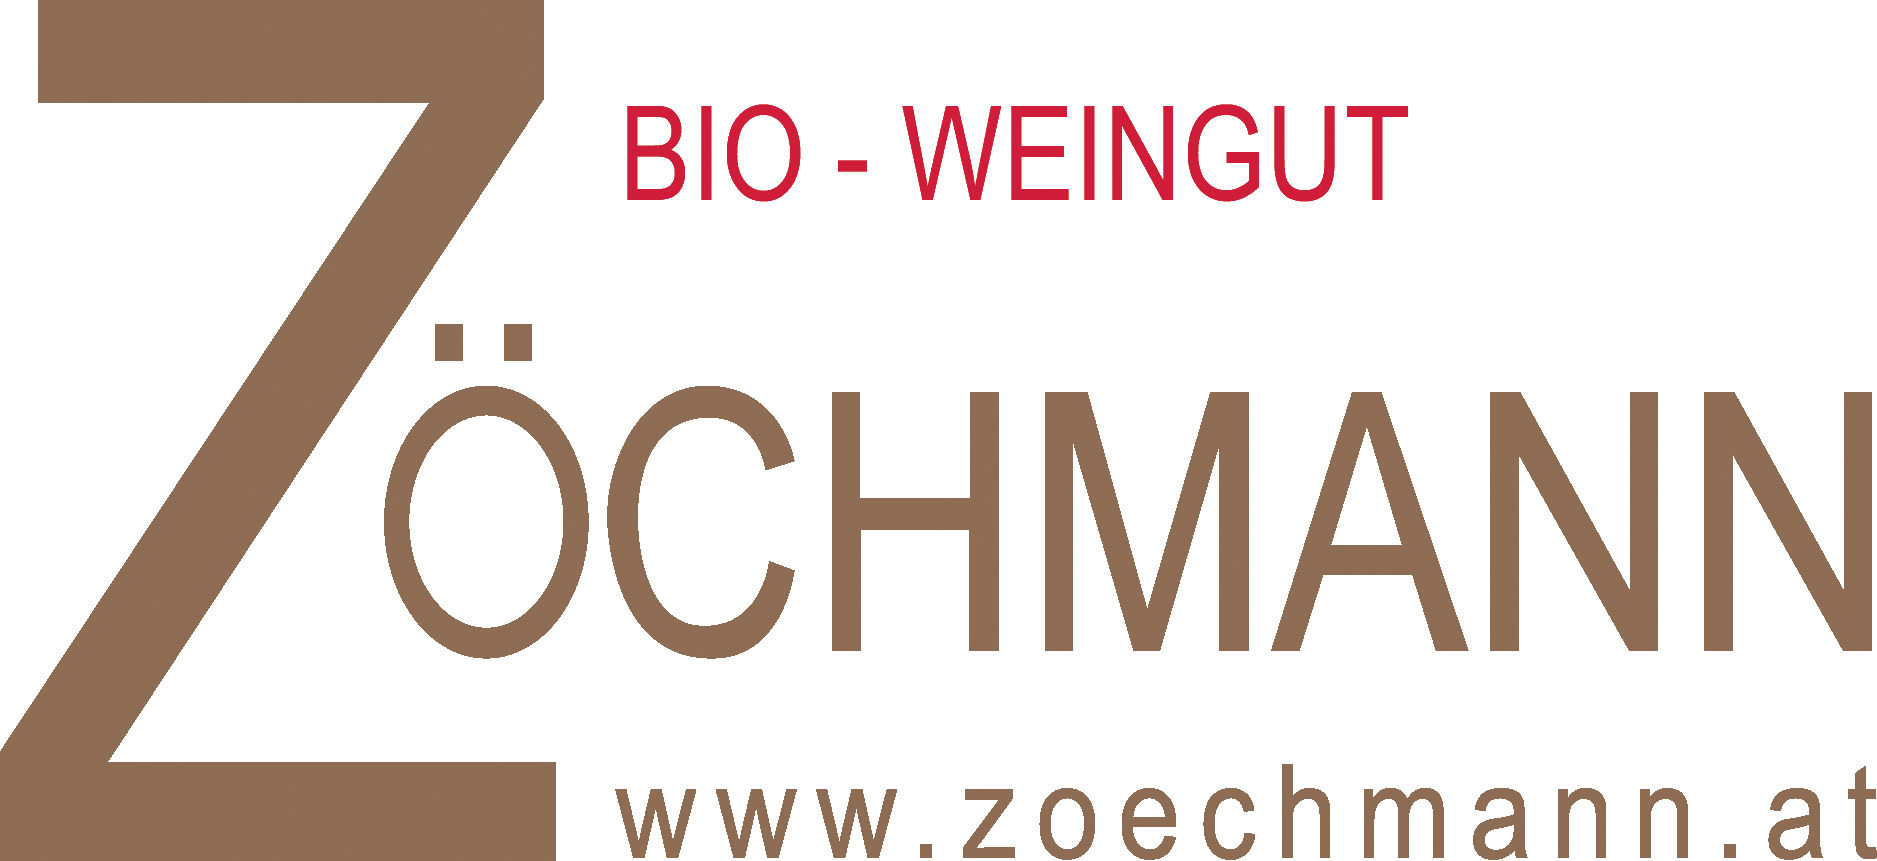 Bio-Weingut Zöchmann